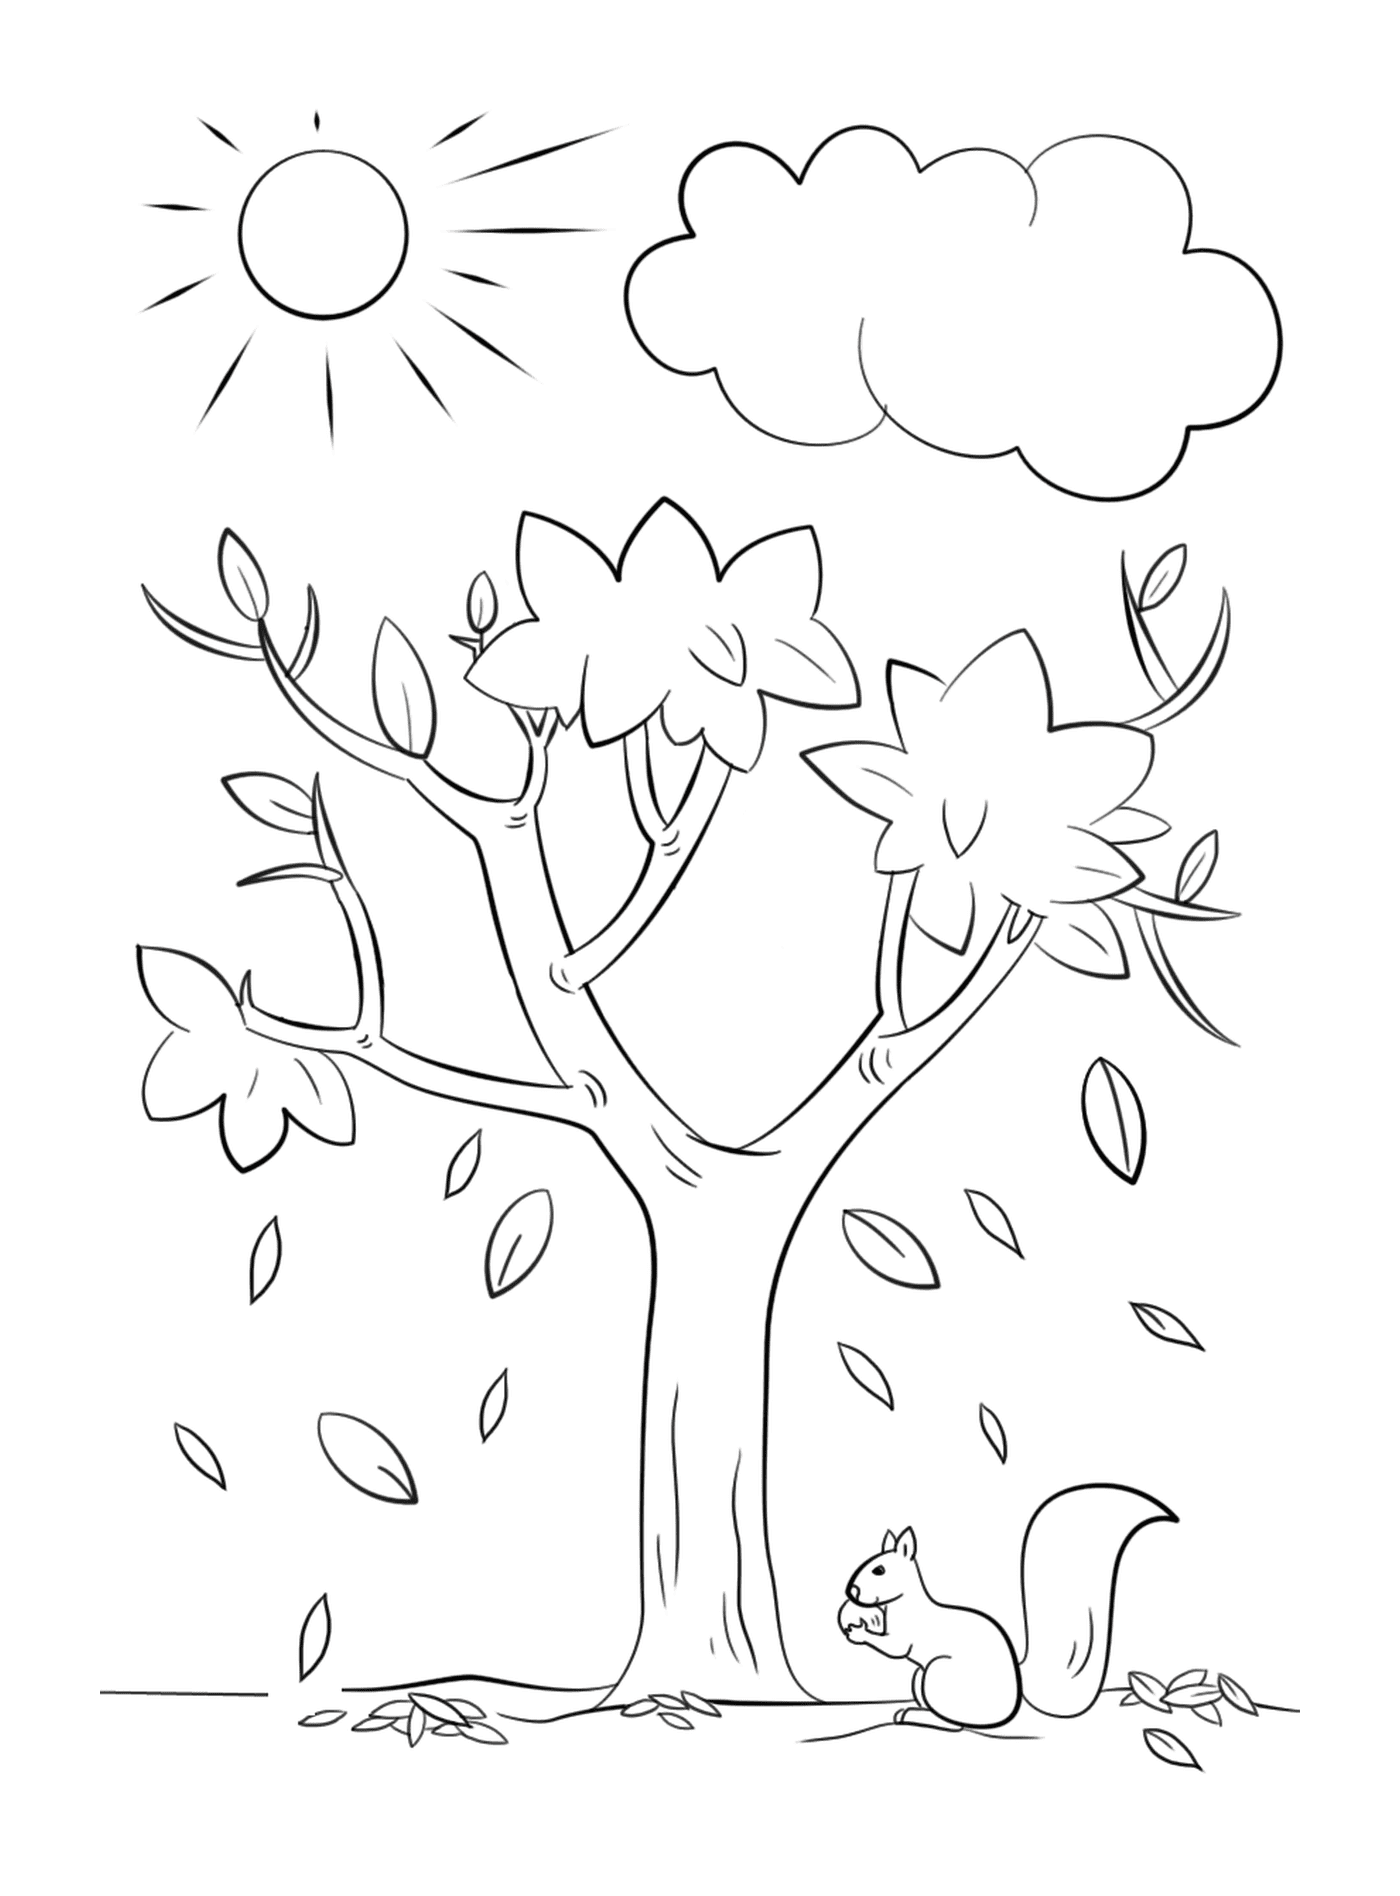  Uma árvore com folhas 